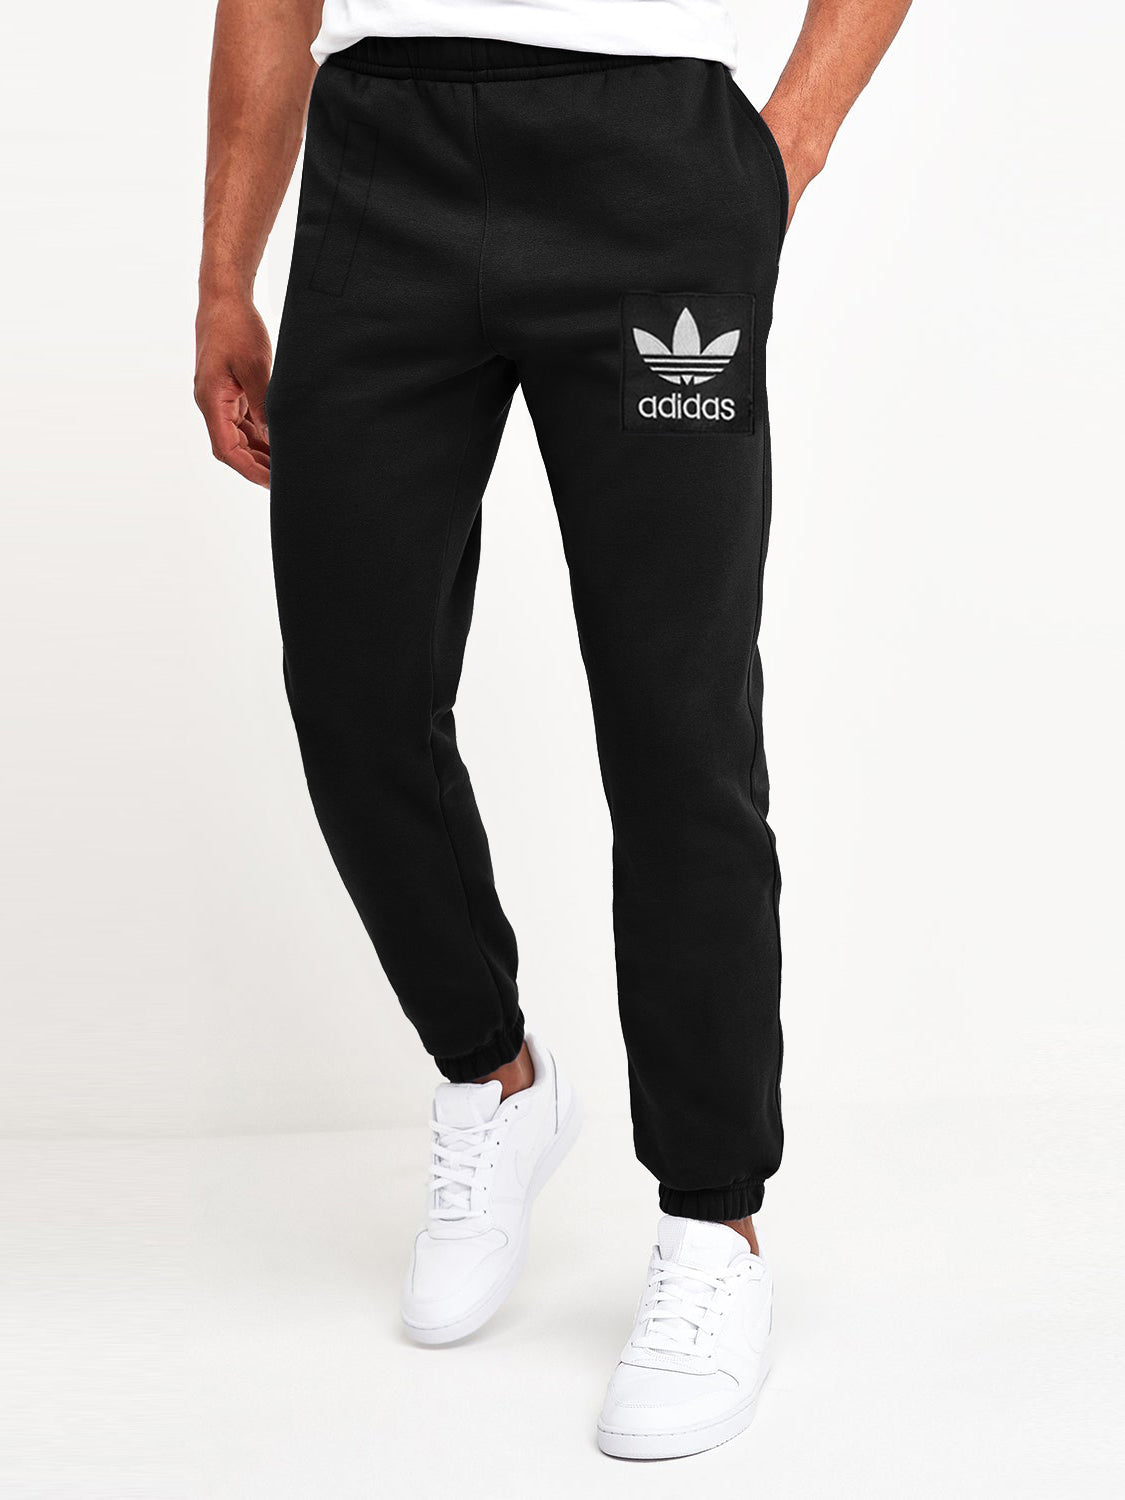 Adidas Fleece Gathering Bottom Trouser For Men-Black-SP955